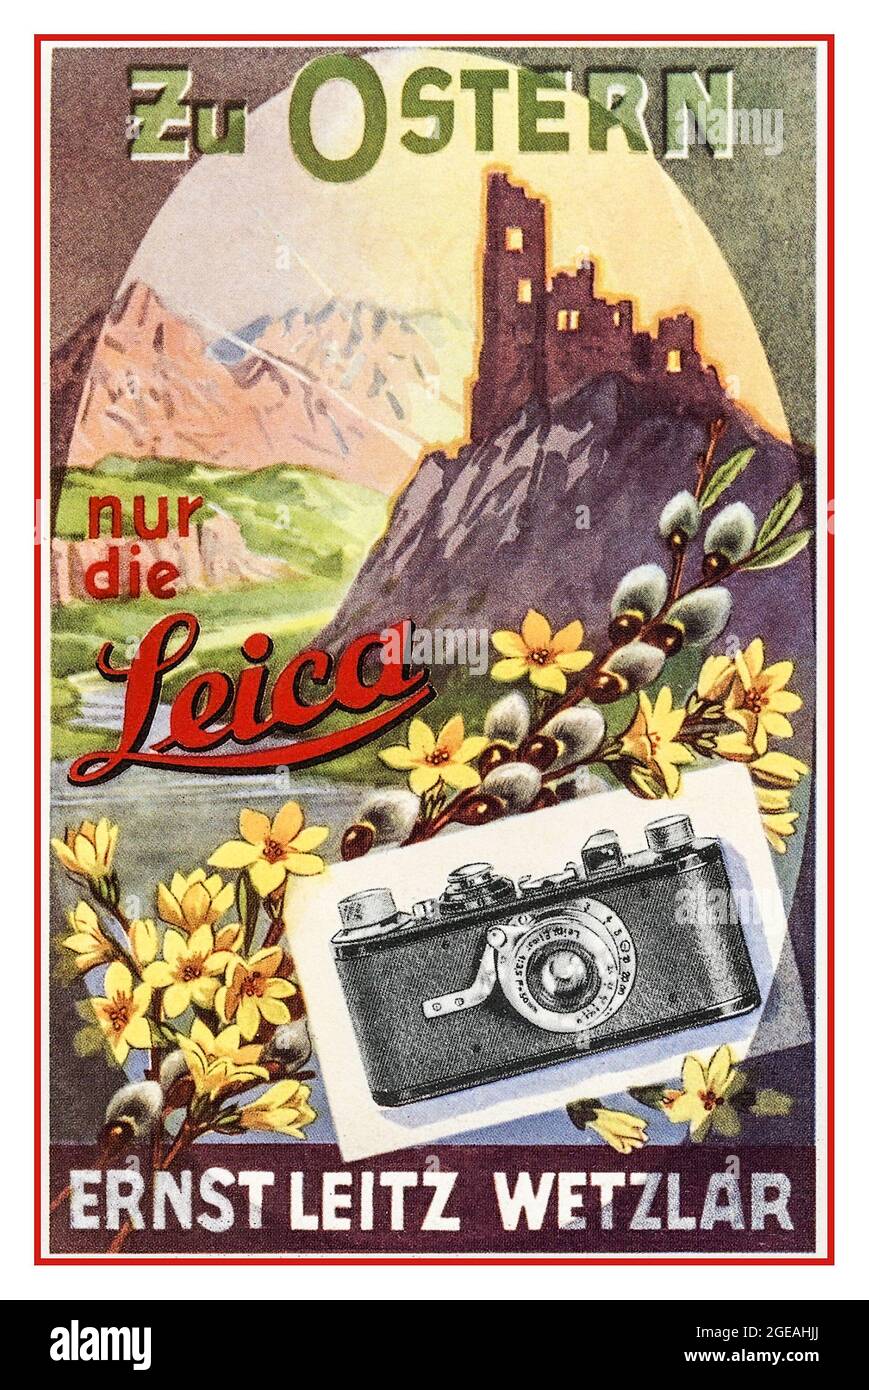 Vintage LEICA A 35mm cámara 1920 's cartel de publicidad de prensa 'Zu Ostern nur die Leica'. Sólo la Leica en Semana Santa Foto de stock